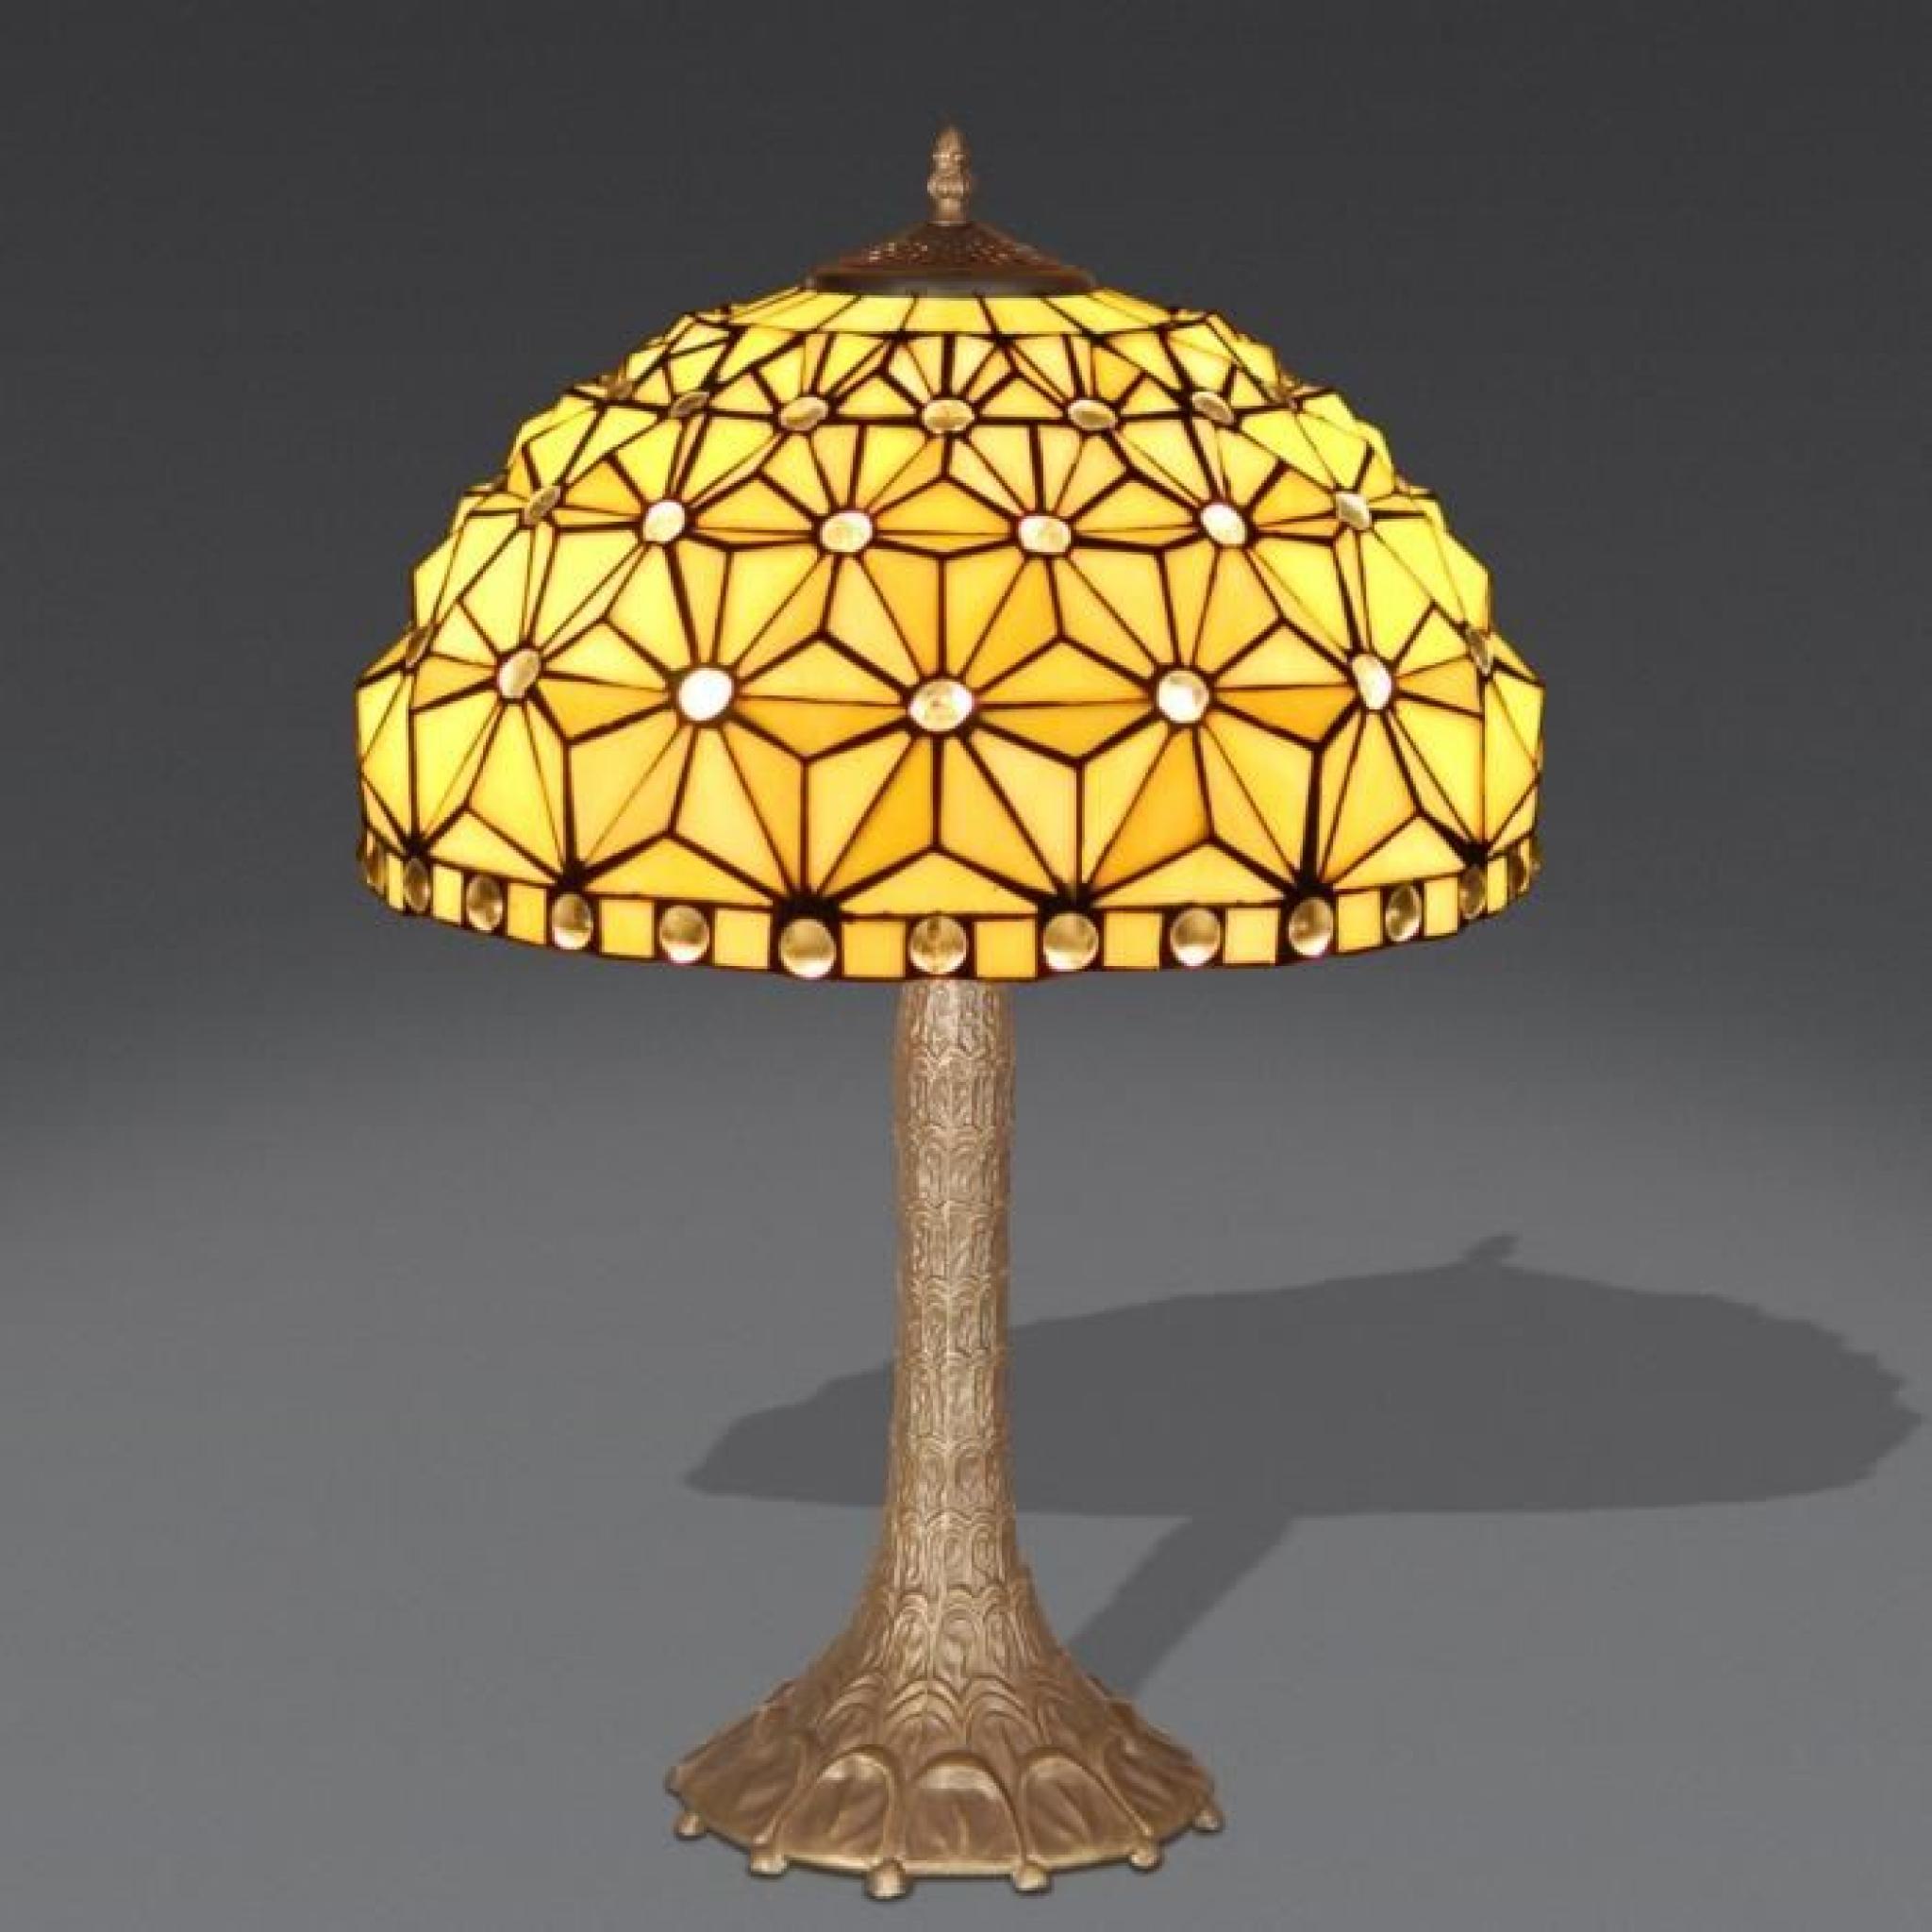 Lampe de table avec étoiles style Tiffany avec base de métallique bronzé